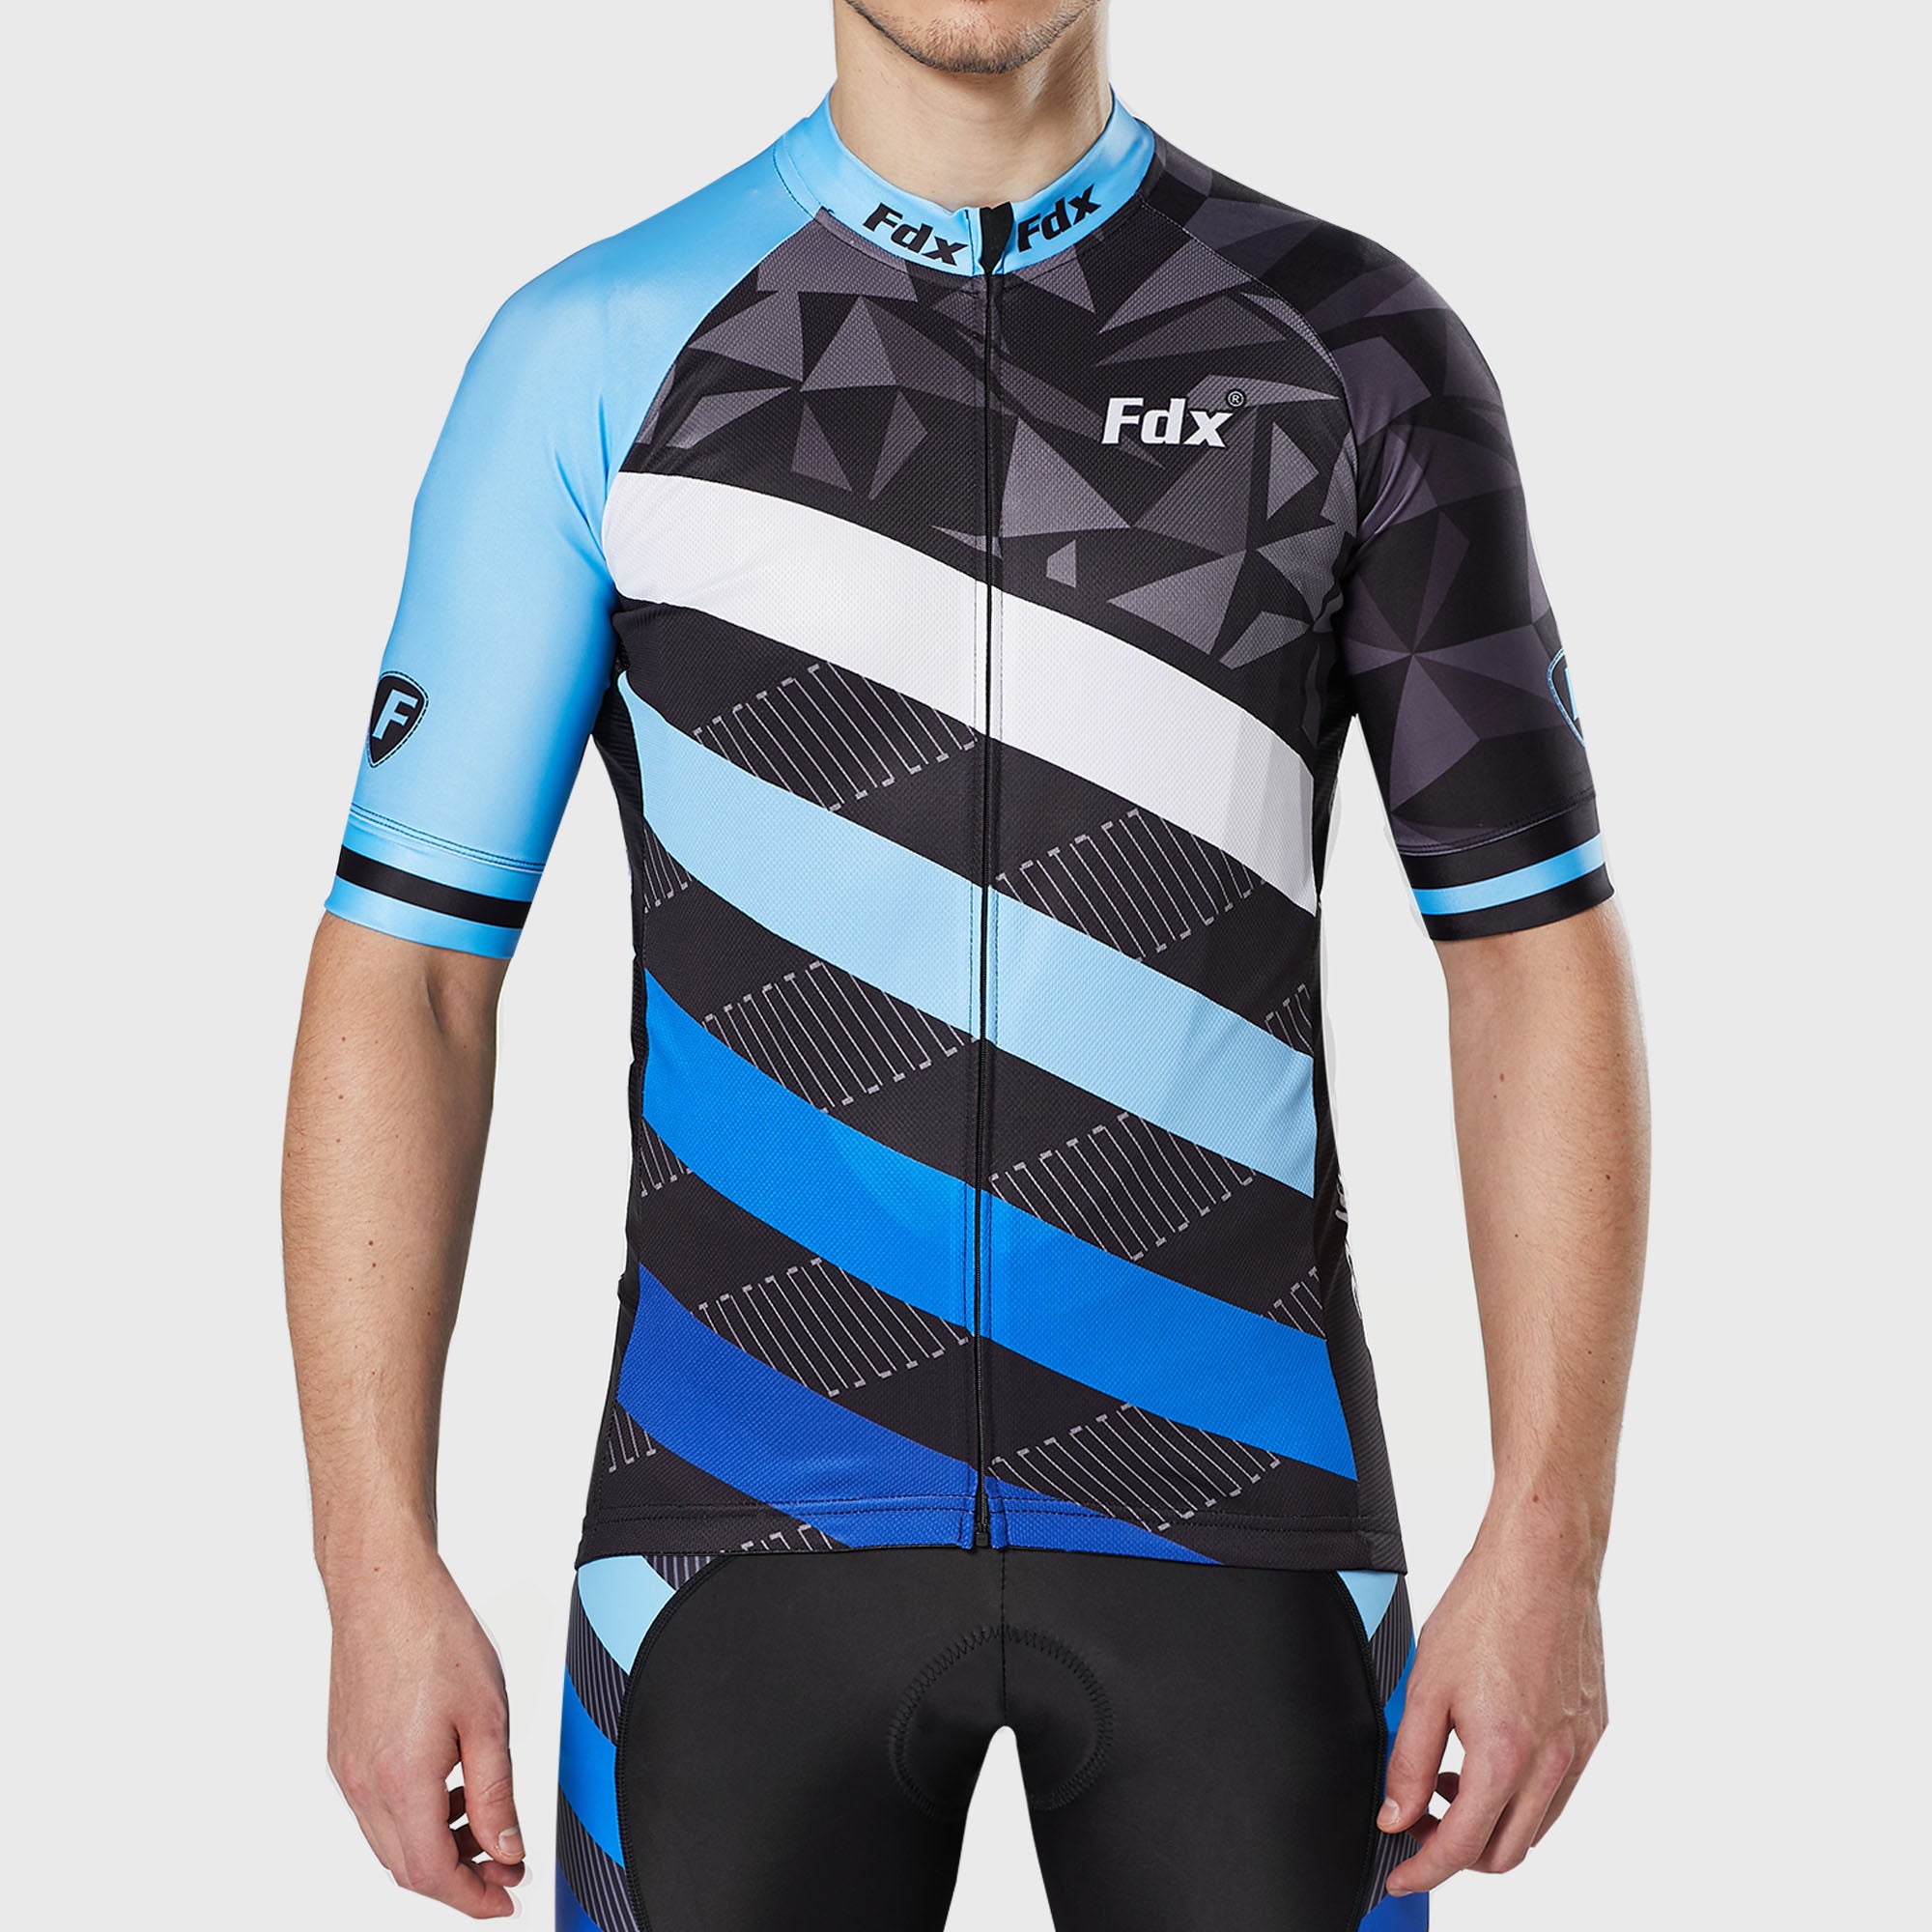 Fdx Mens Blue & Black Short Sleeve Cycling Jersey for Summer Best Road Bike Wear Top Light Weight, Full Zipper, Pockets & Hi-viz Reflectors - Equin